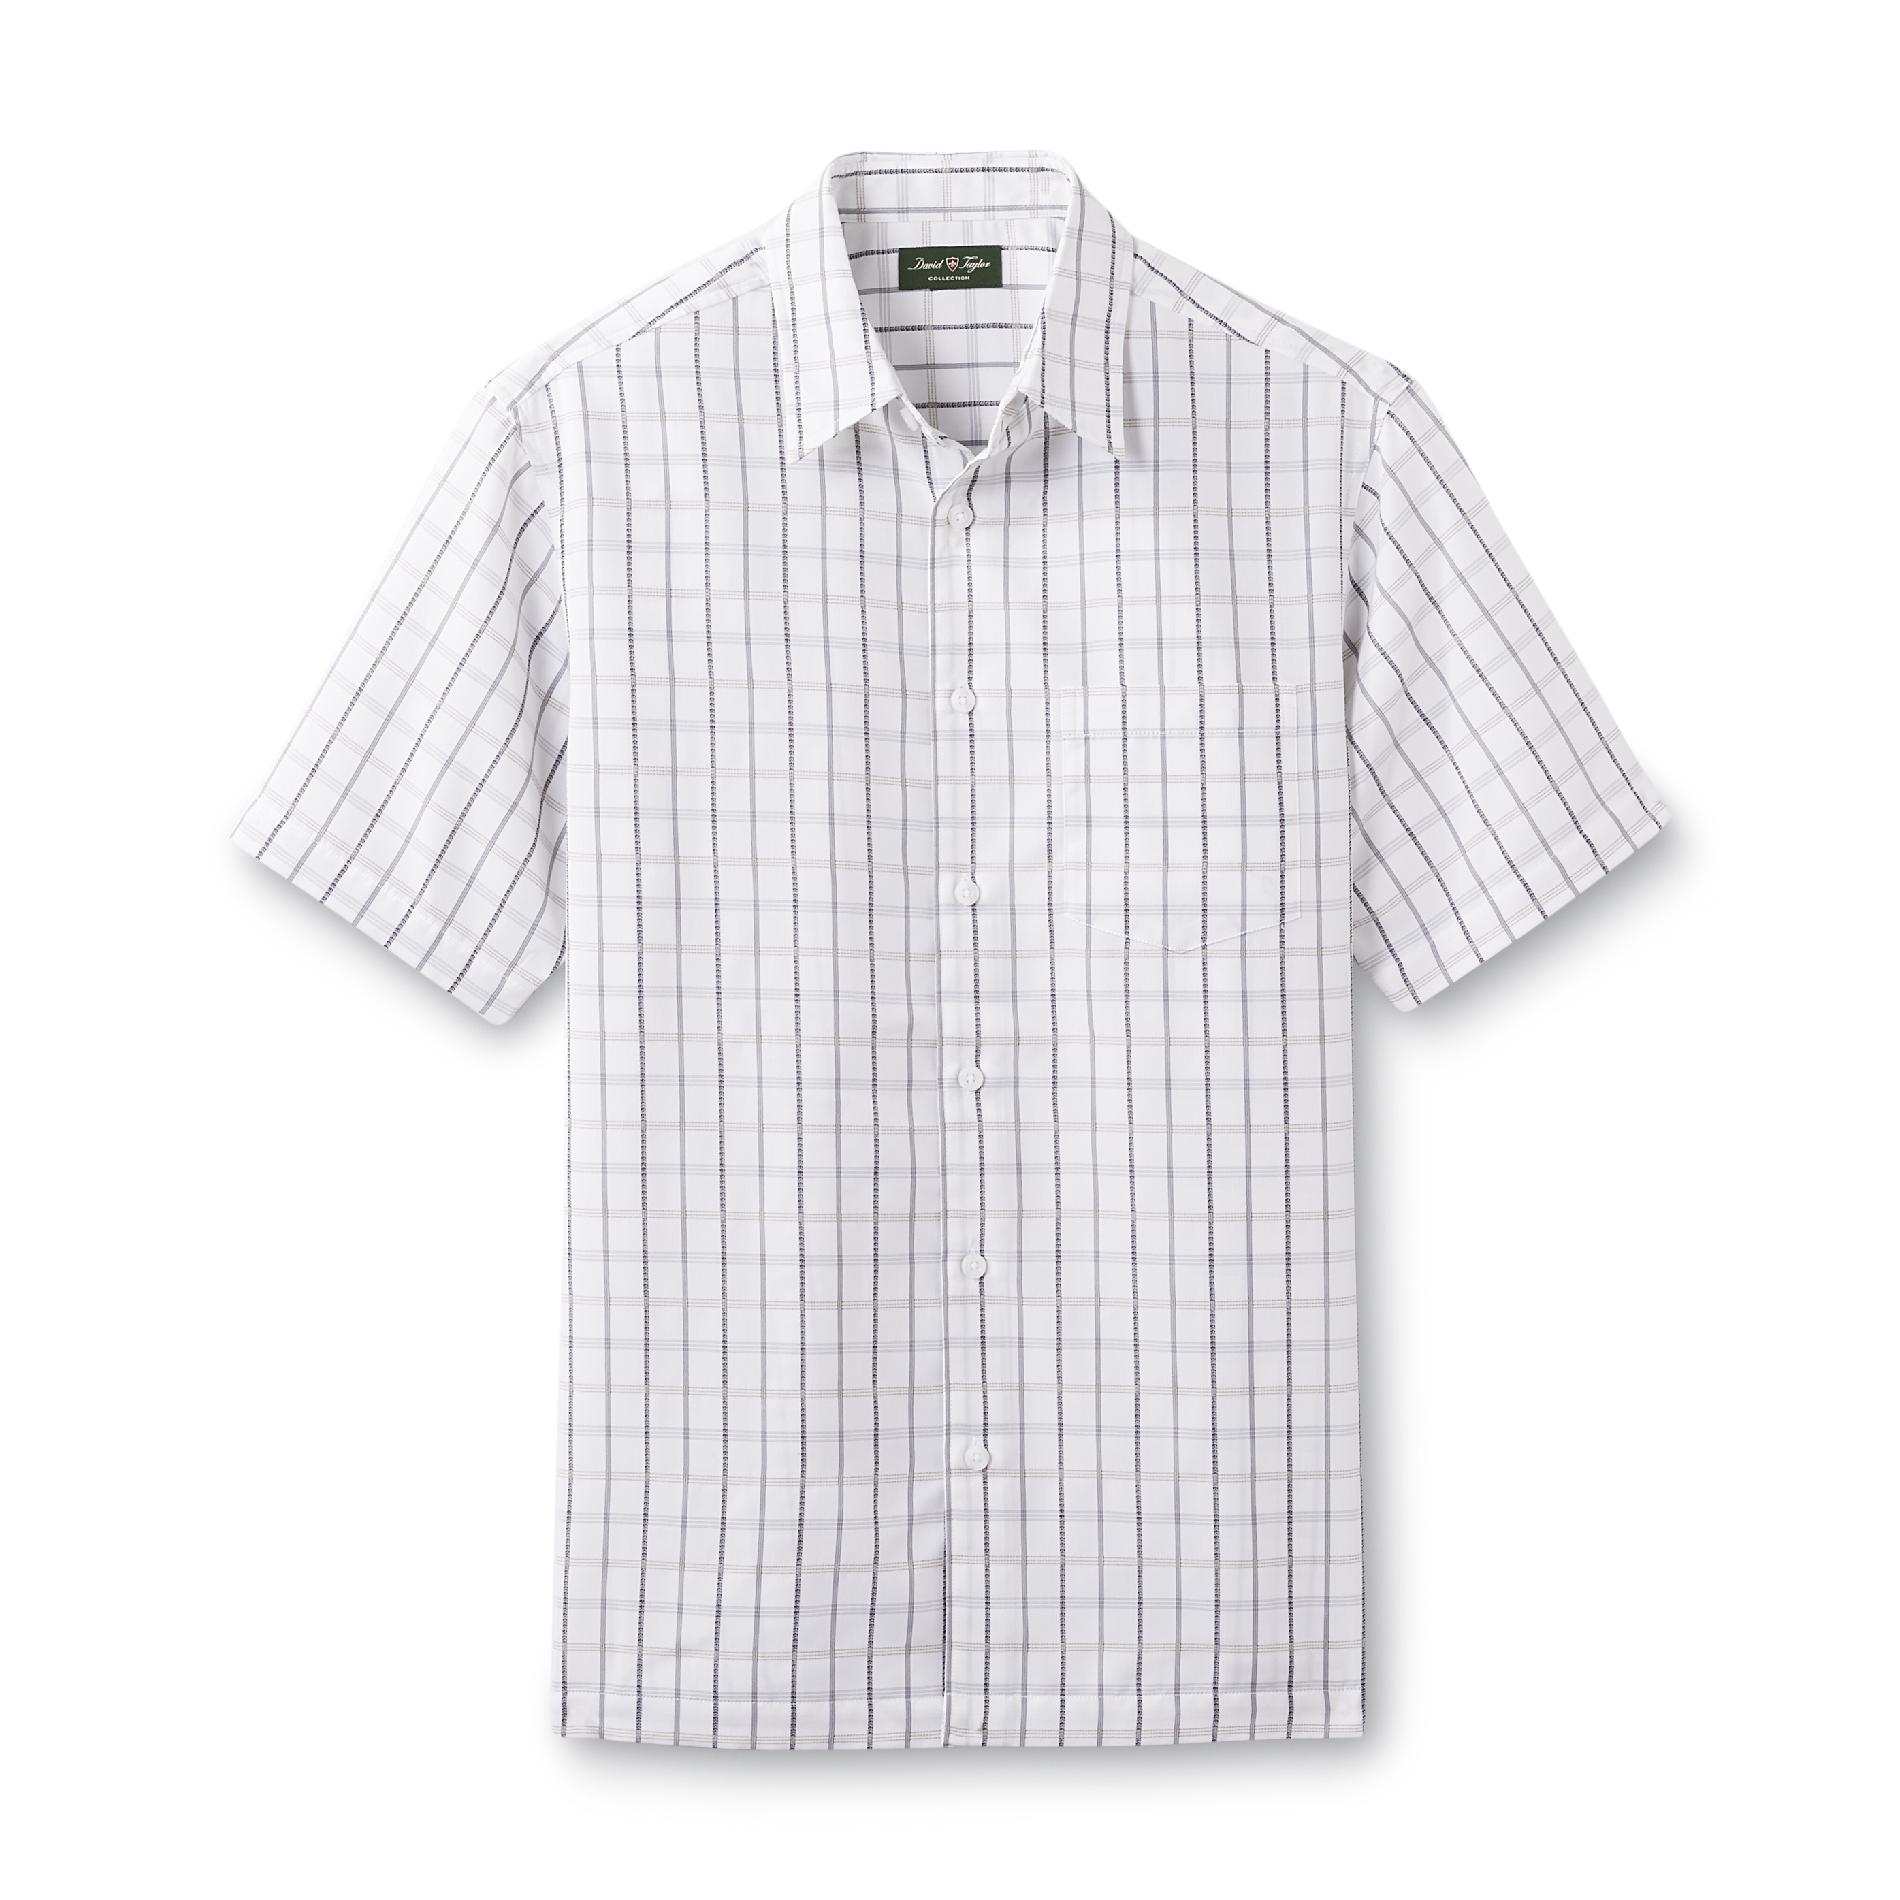 David Taylor Collection Men's Short-Sleeve Shirt - Check